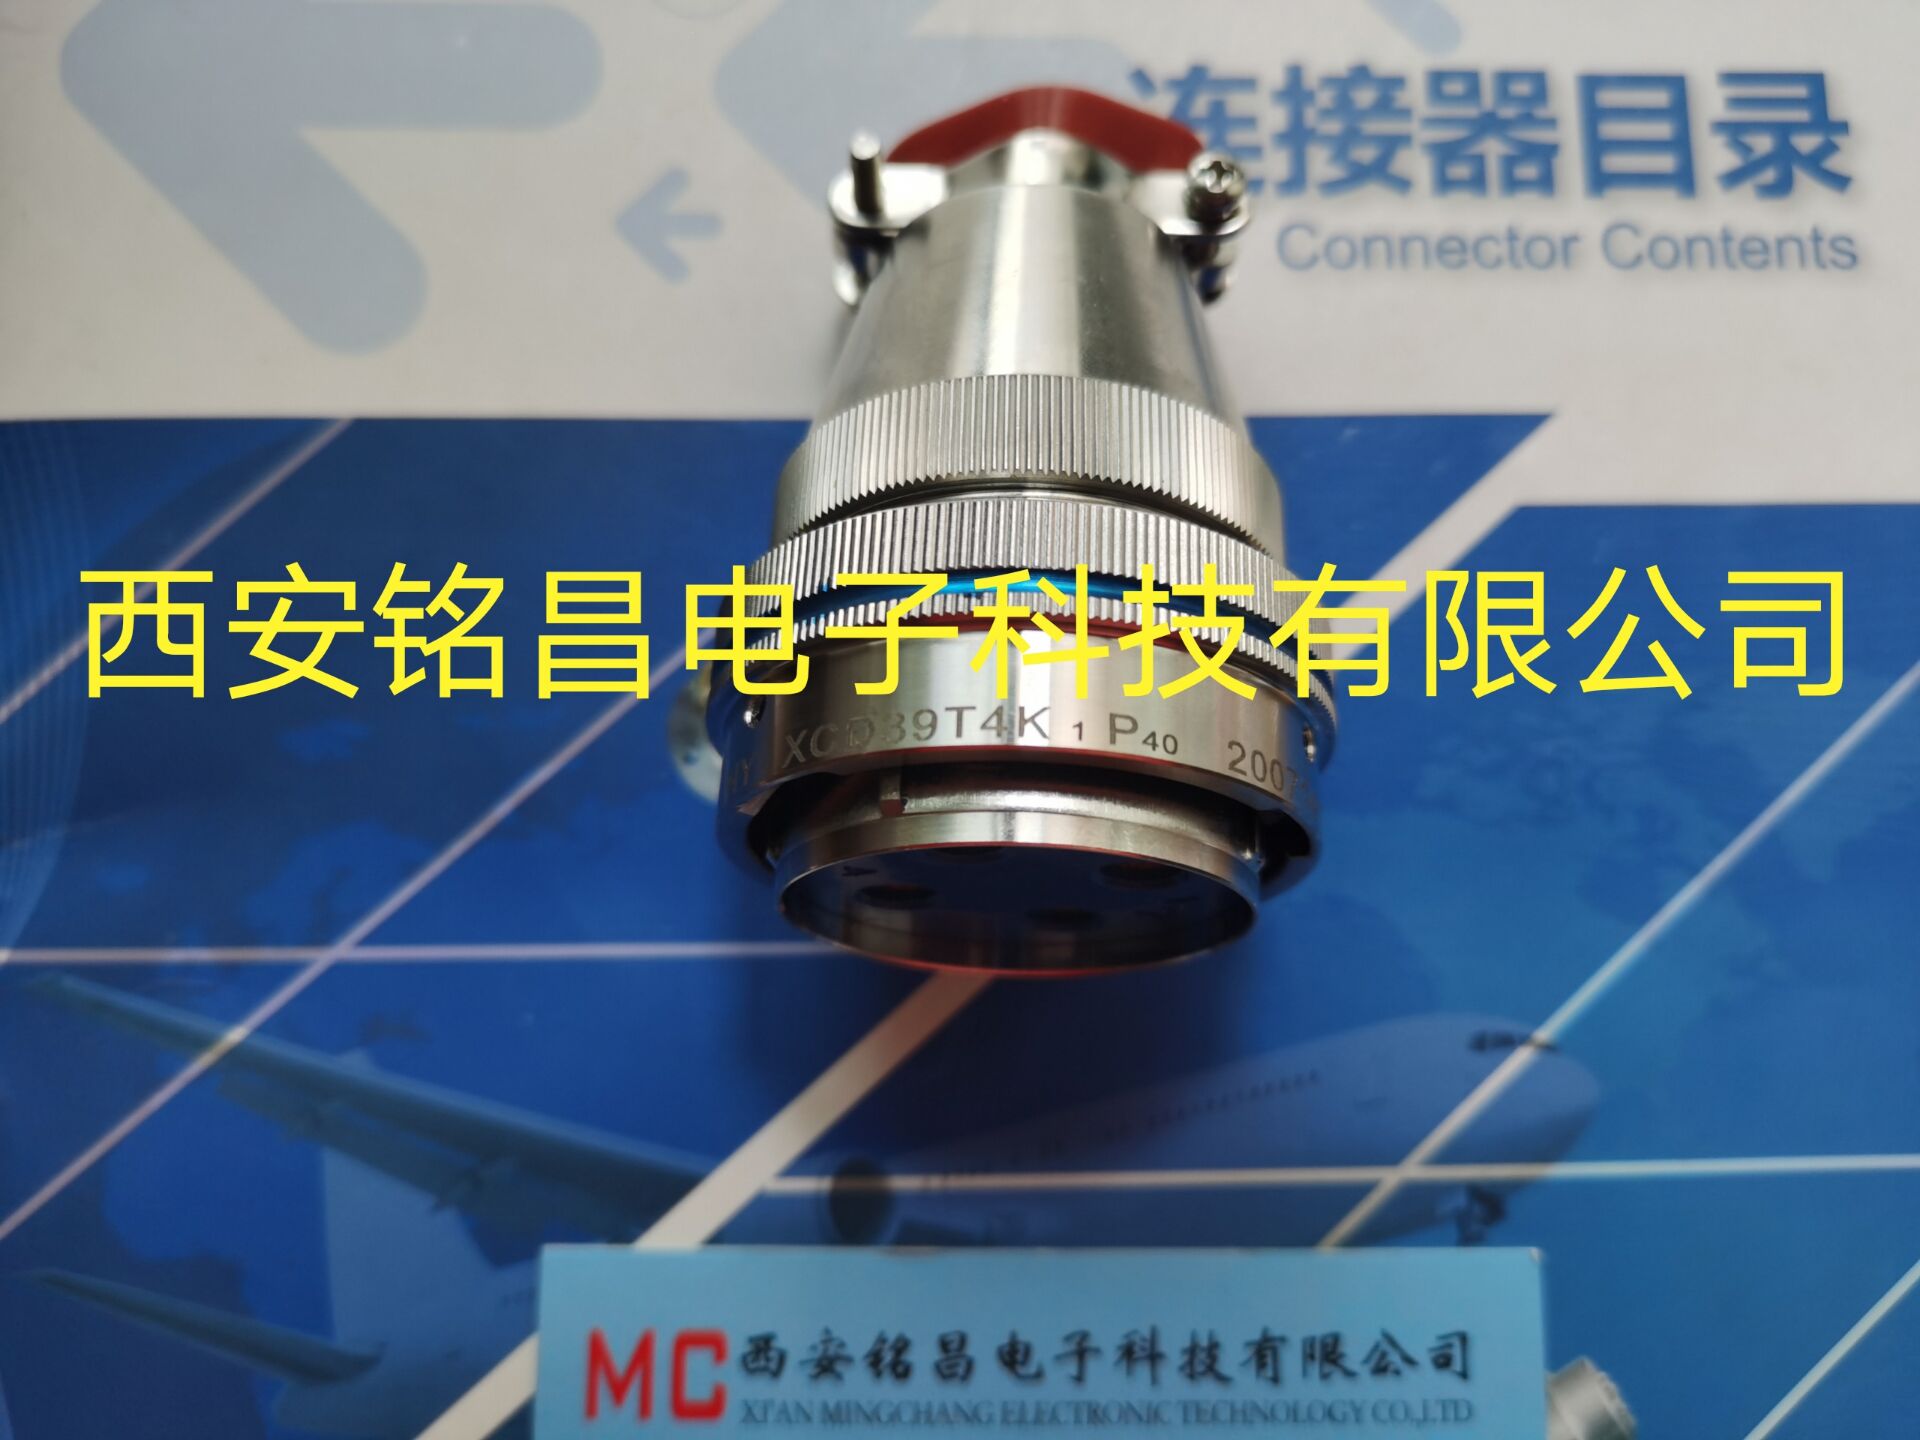 MC西安铭昌销售XCD36T4K1P40圆形连接器-厂家直销